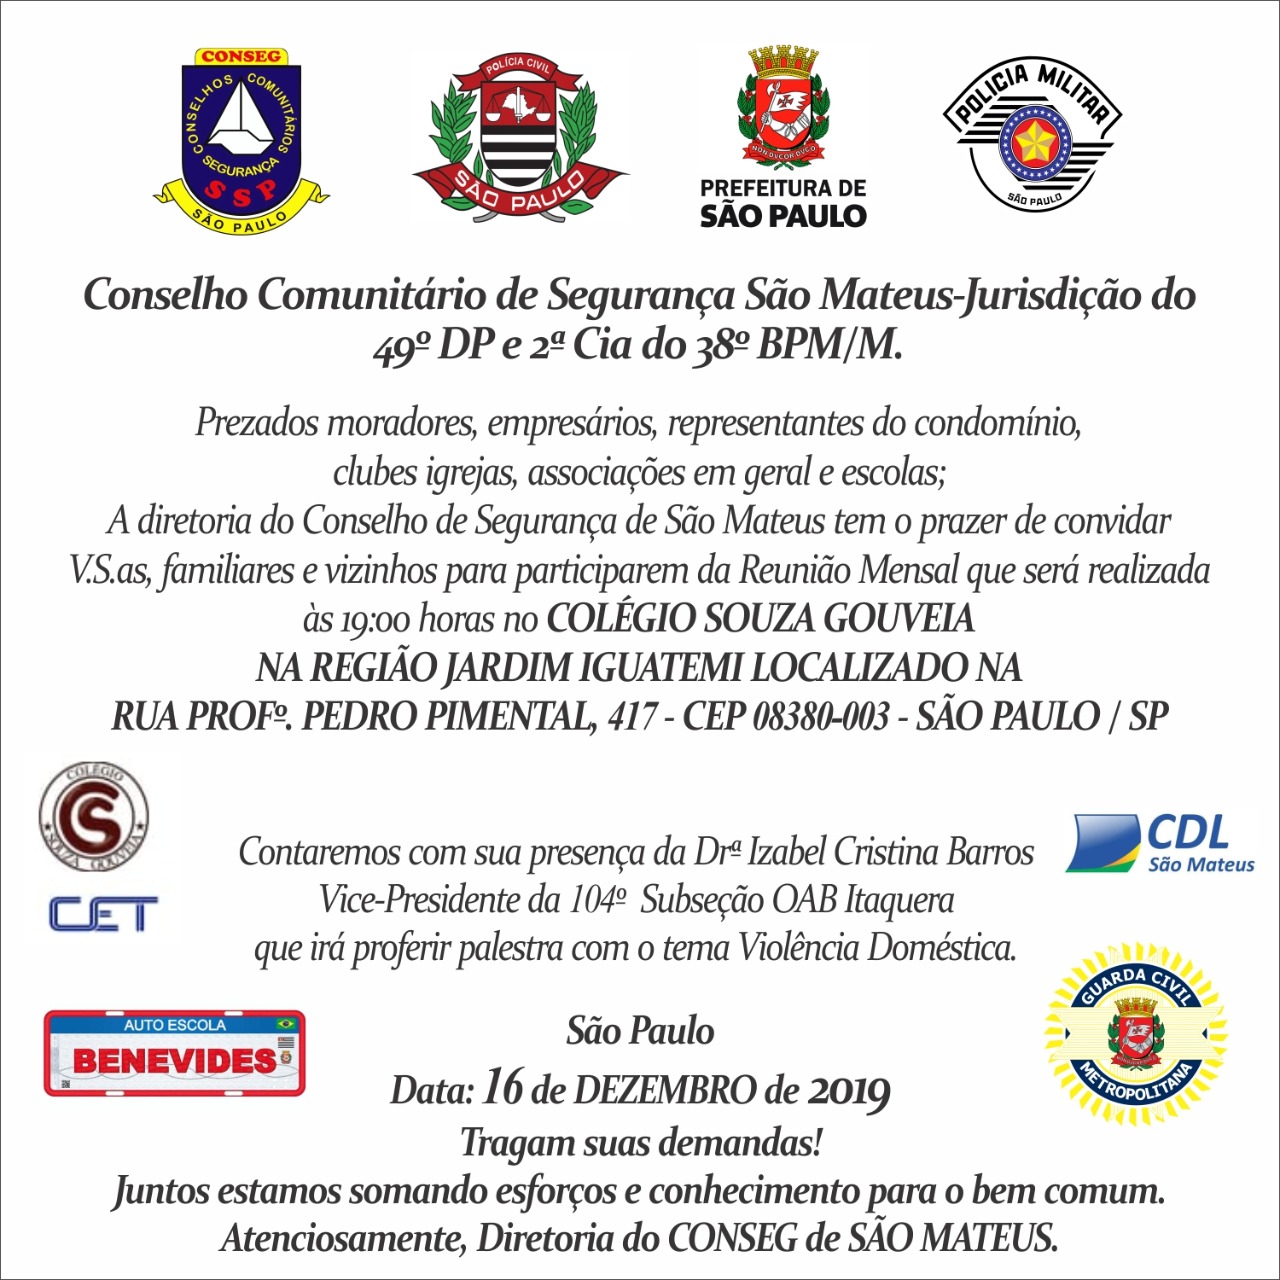 Convite informa que a próxima reunião do Conseg será dia 16, a partir das 19h, no Colégio Souza Gouveia 